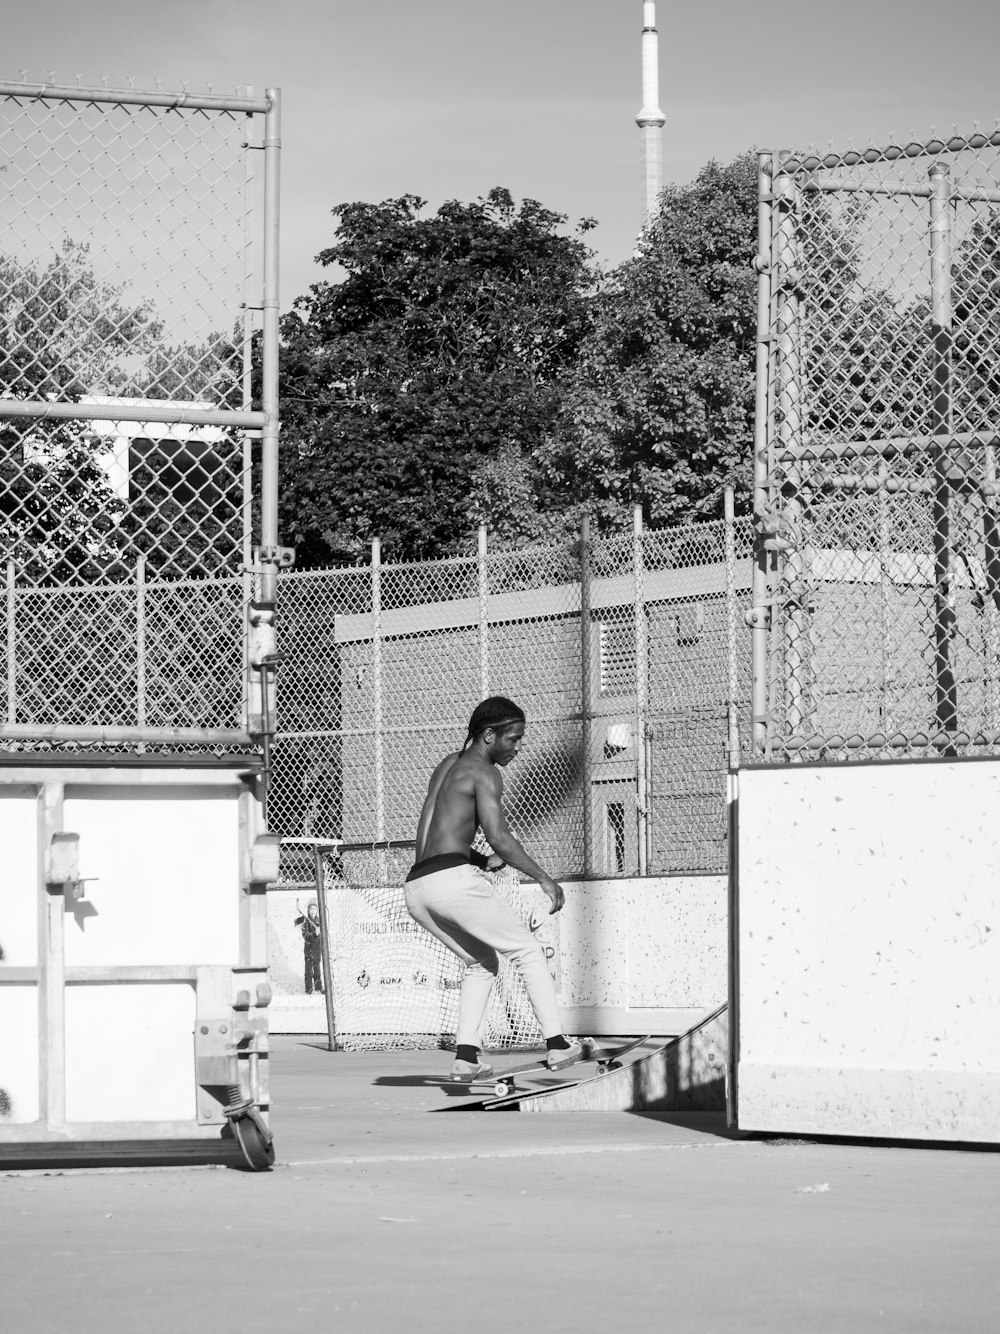 foto em tons de cinza do homem skateboarding